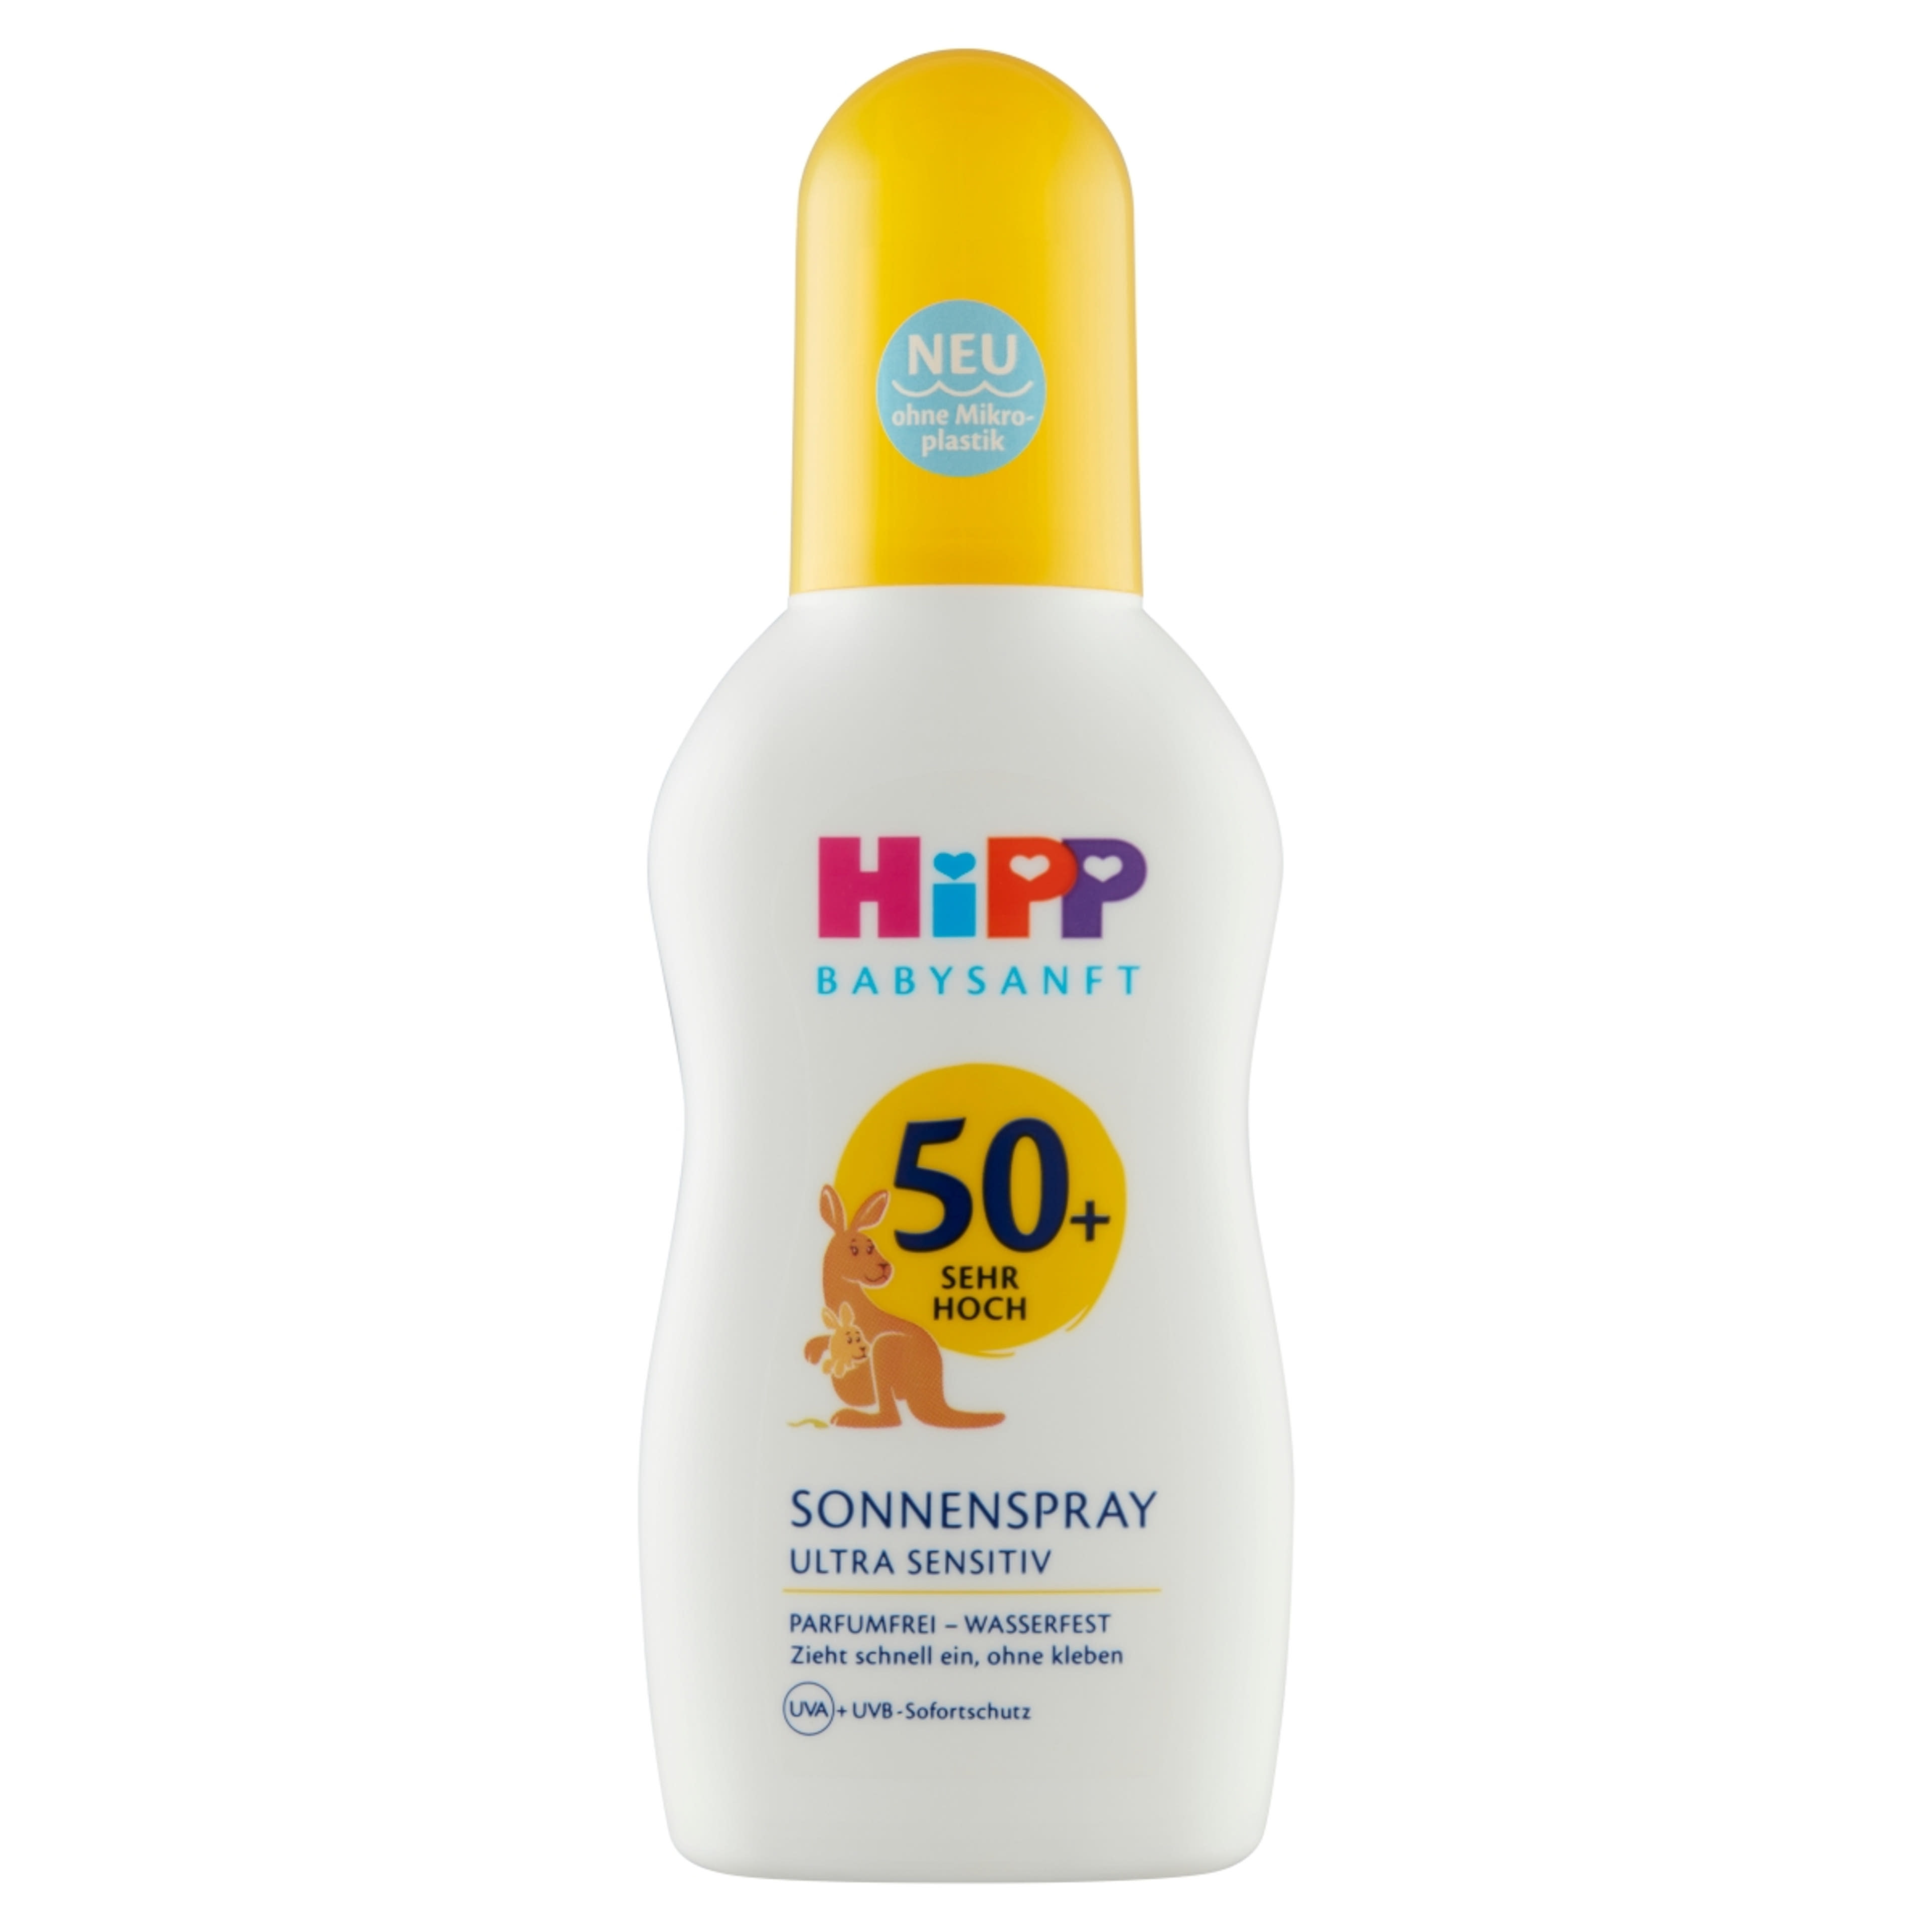 HiPP Babysanft napvédő spray babáknak és gyermekeknek F50+ - 150 ml-1